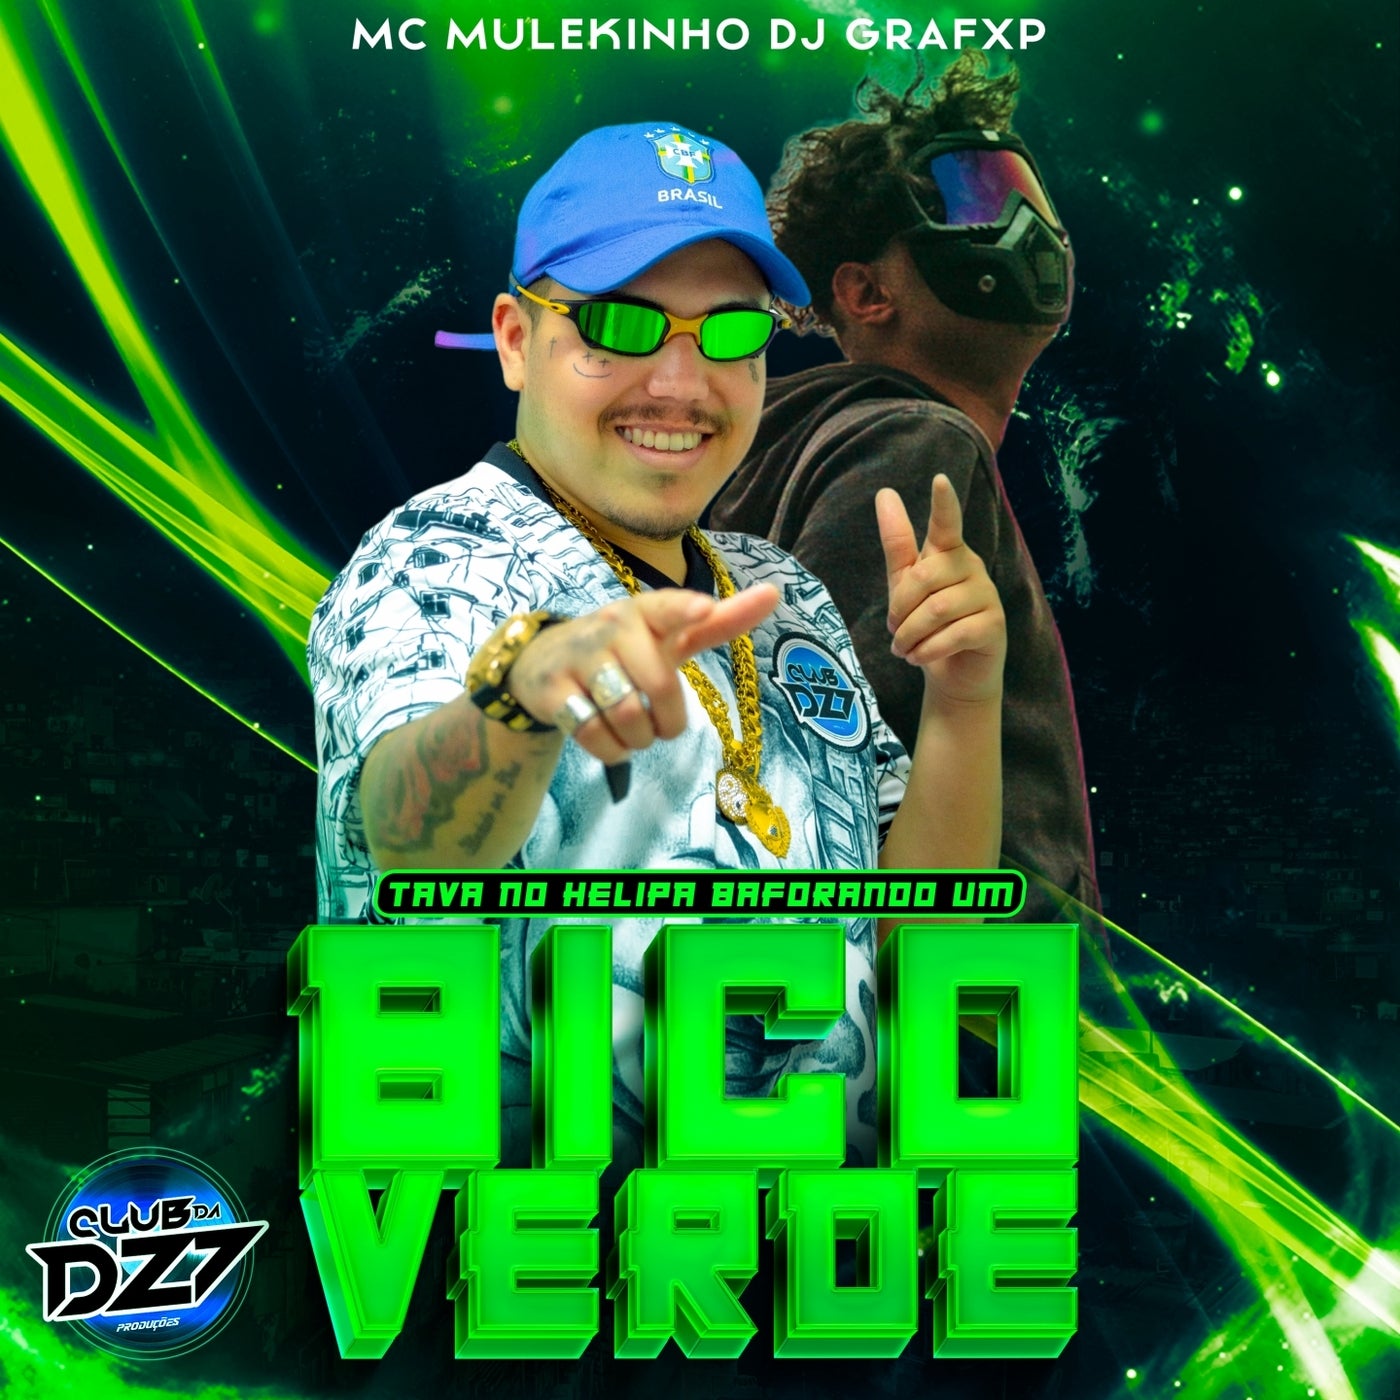 TAVA NO HELIPA BAFORANDO UM BICO VERDE by Dj Grafxp, Club da DZ7 and MC  MULEKINHO on Beatsource